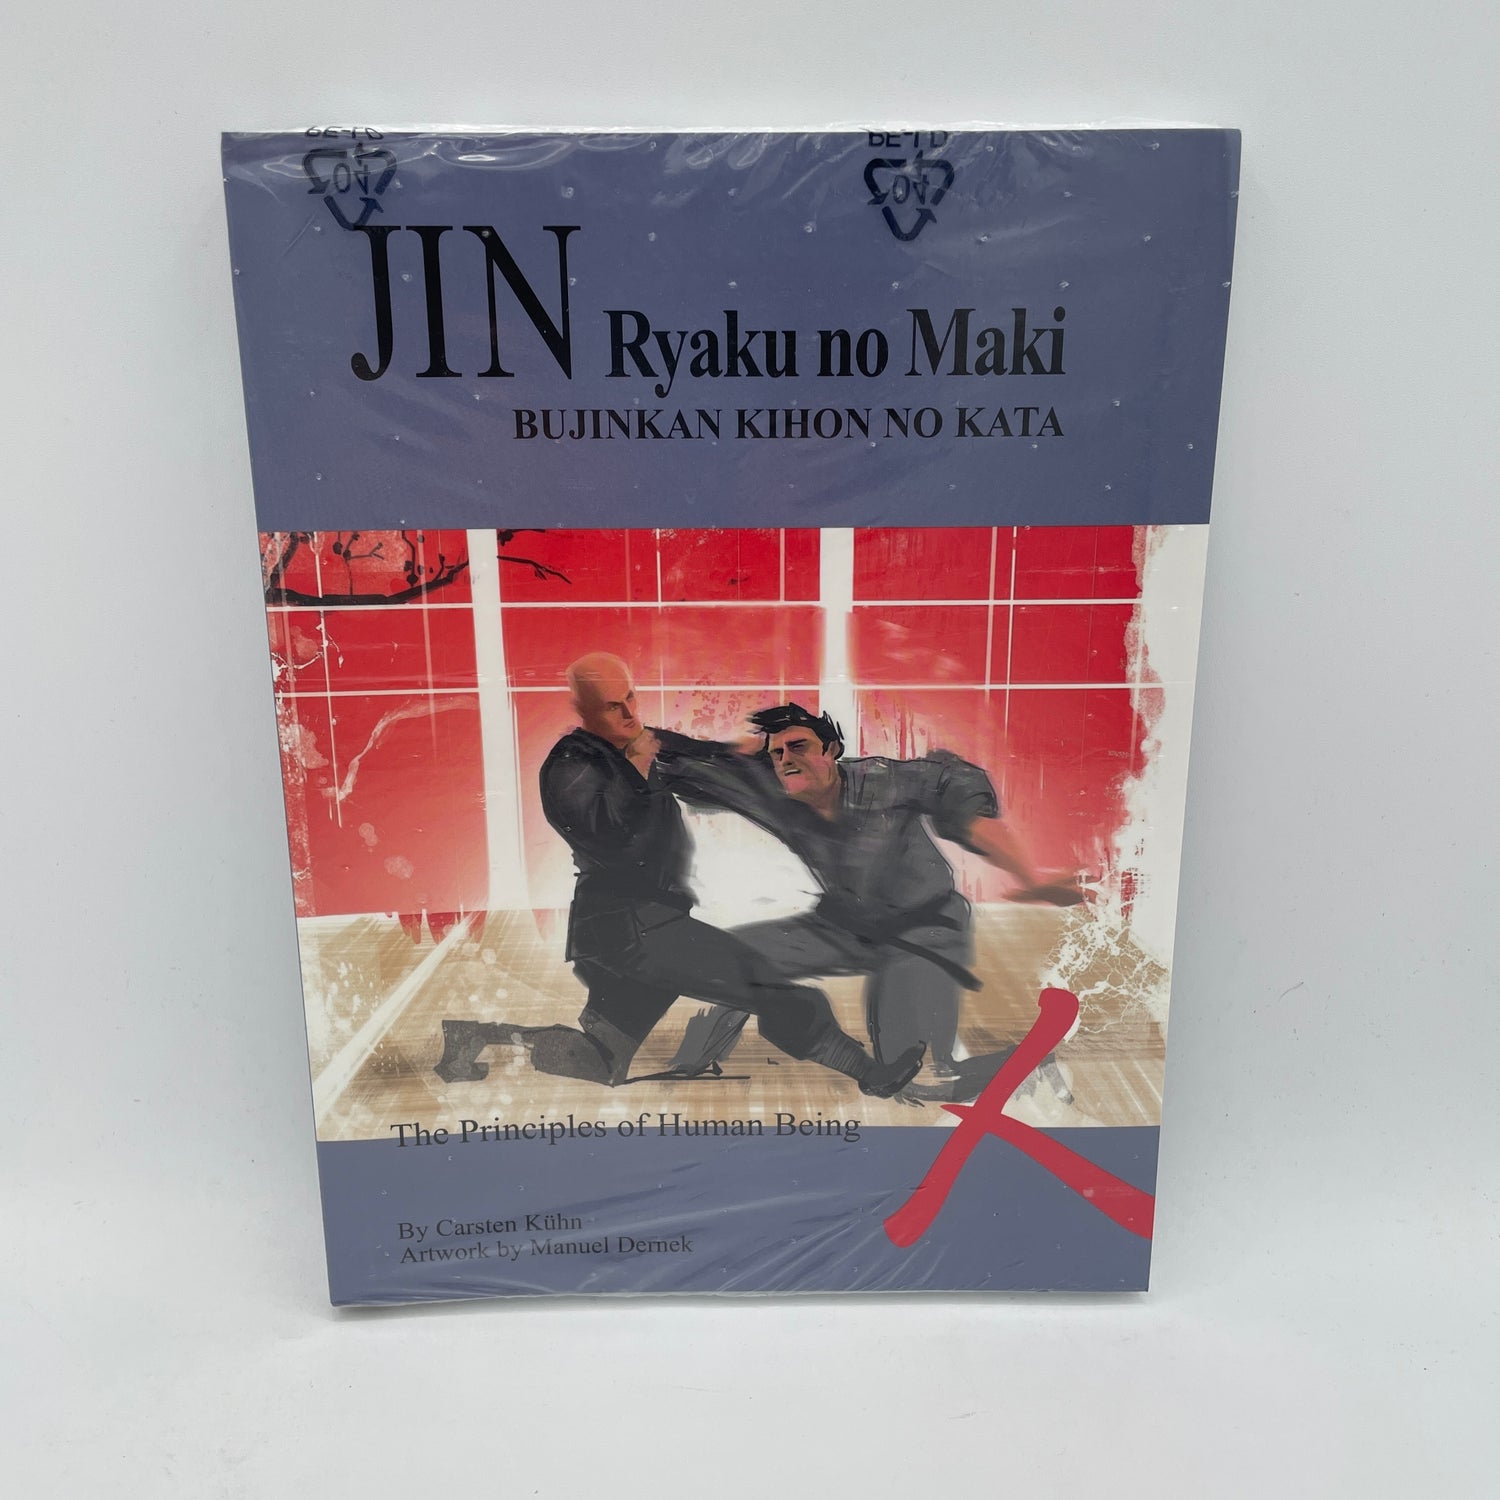 Libro Jin Ryaku no Maki (Principios del Hombre) de Carsten Kuhn